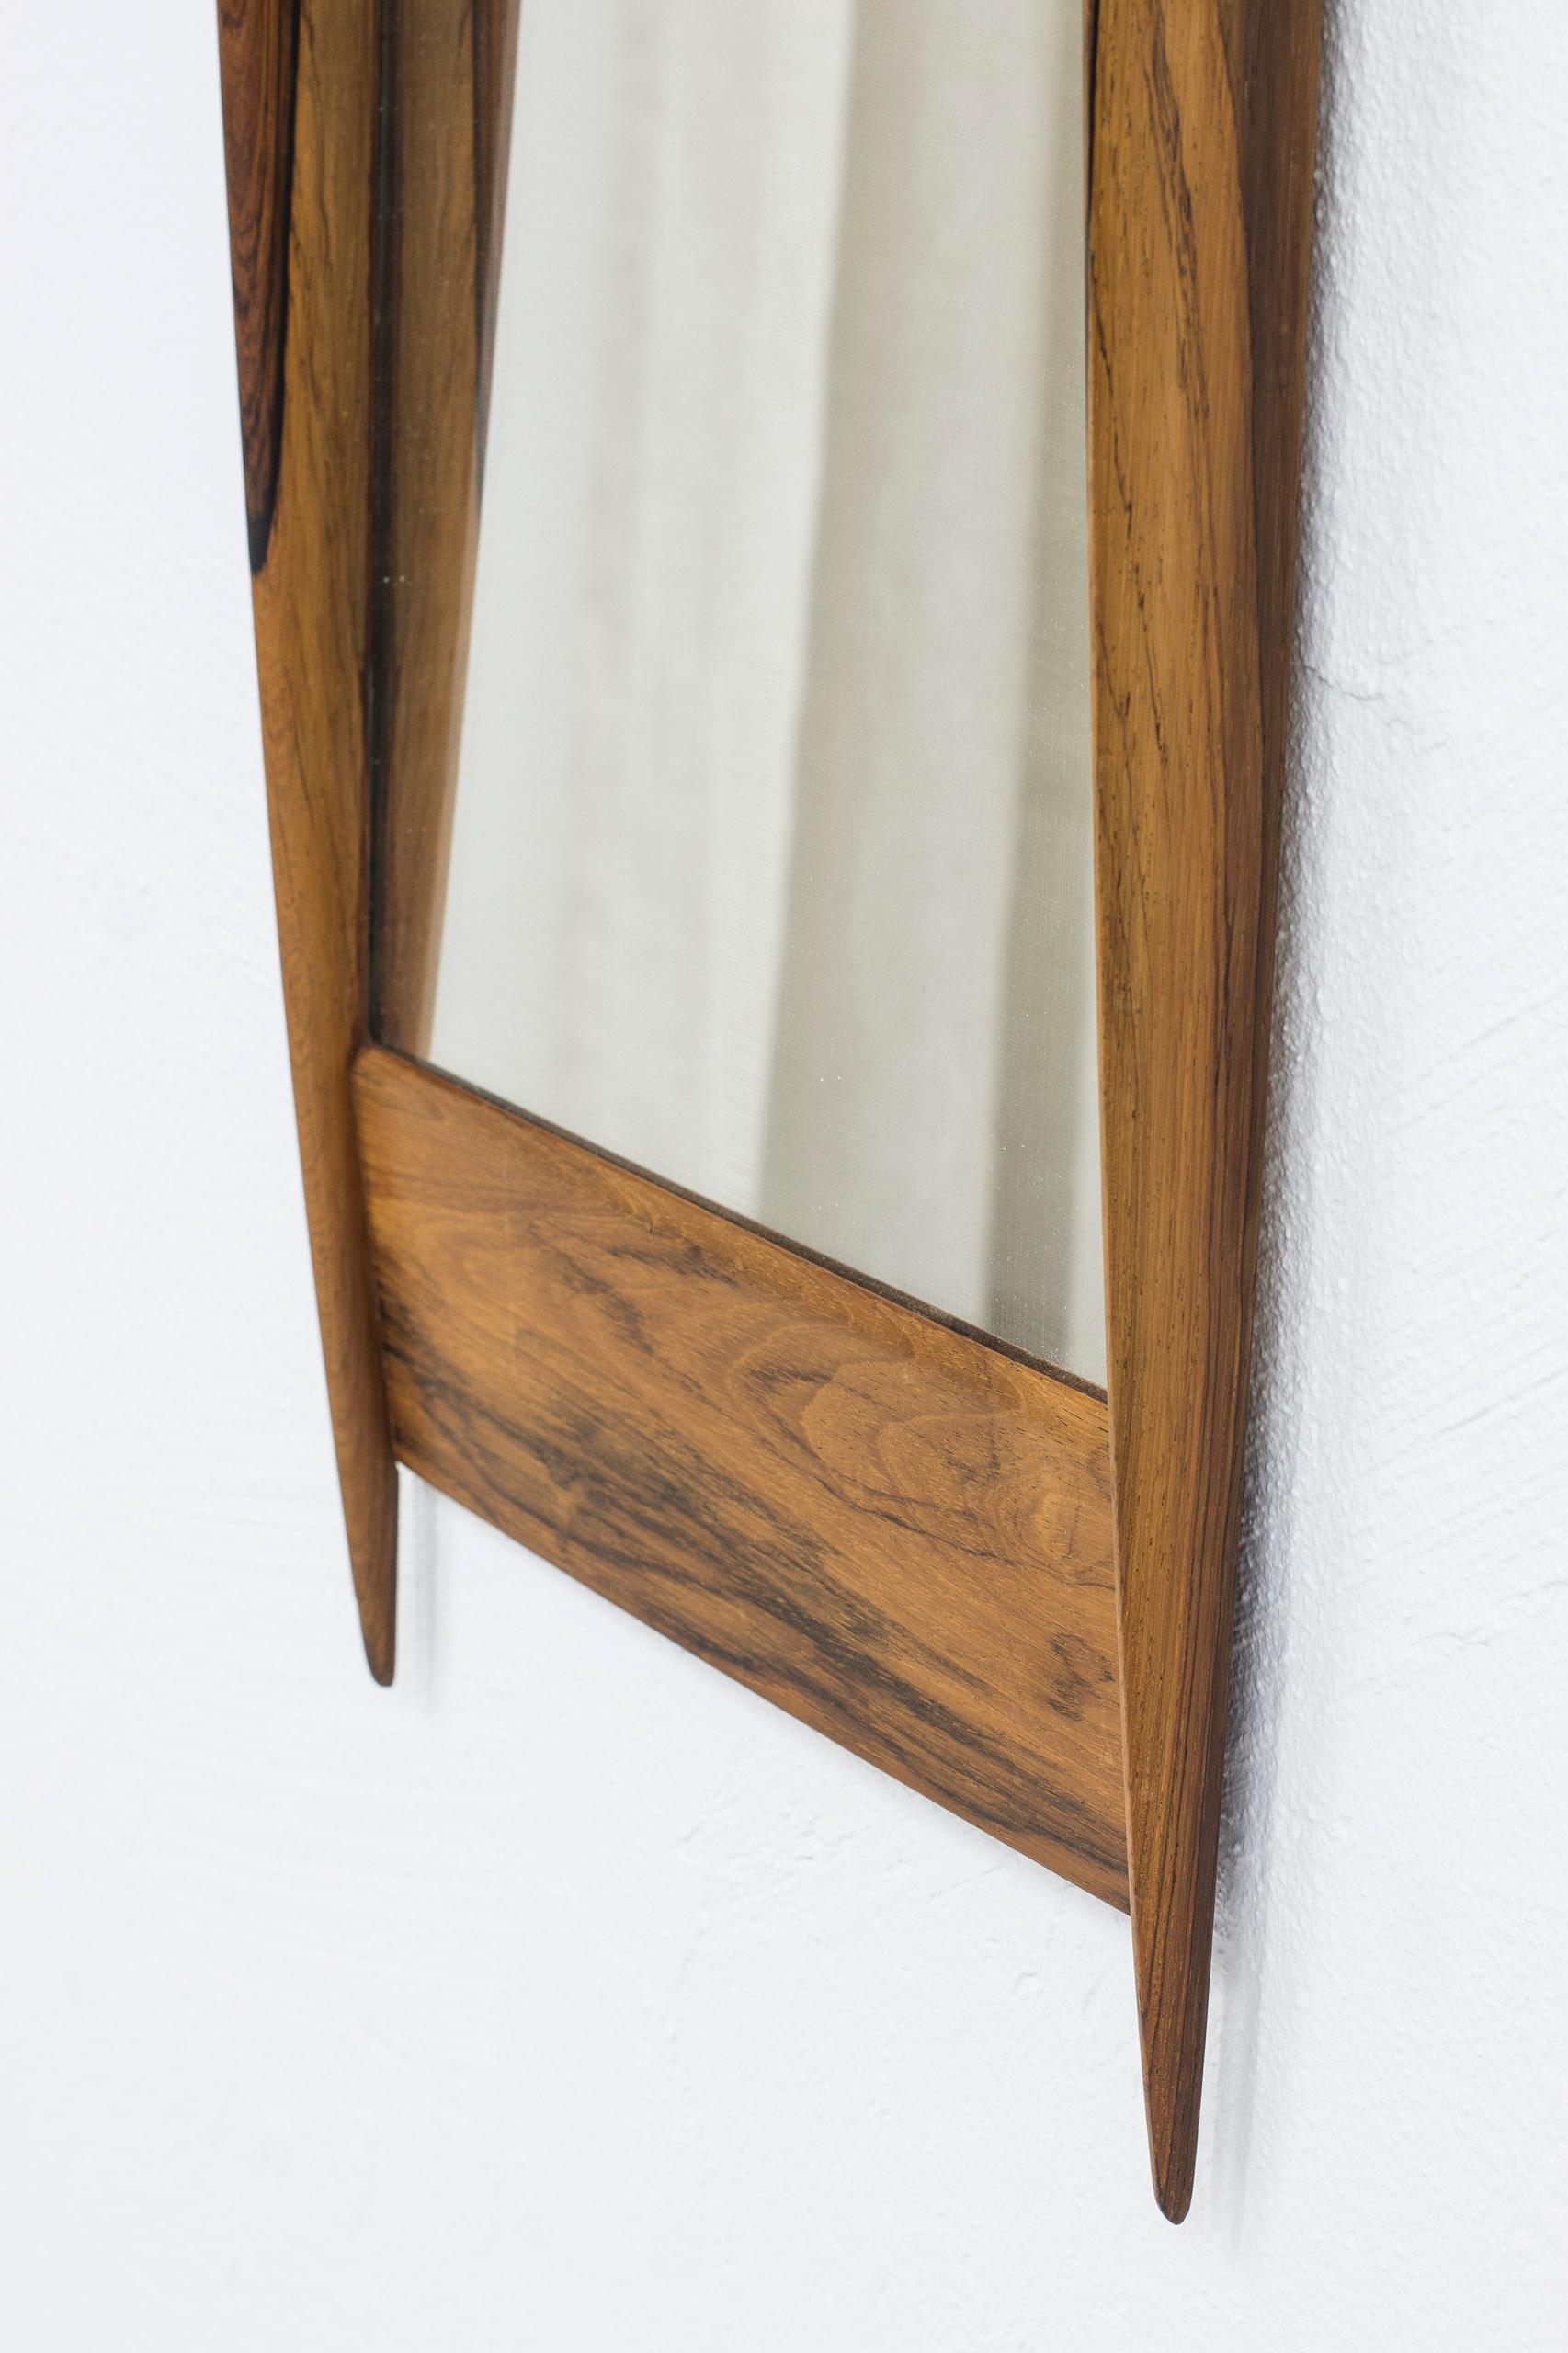 Scandinavian Modern 1950s Walnut Mirror by Glas & Trä, Sweden, Swedish Modern